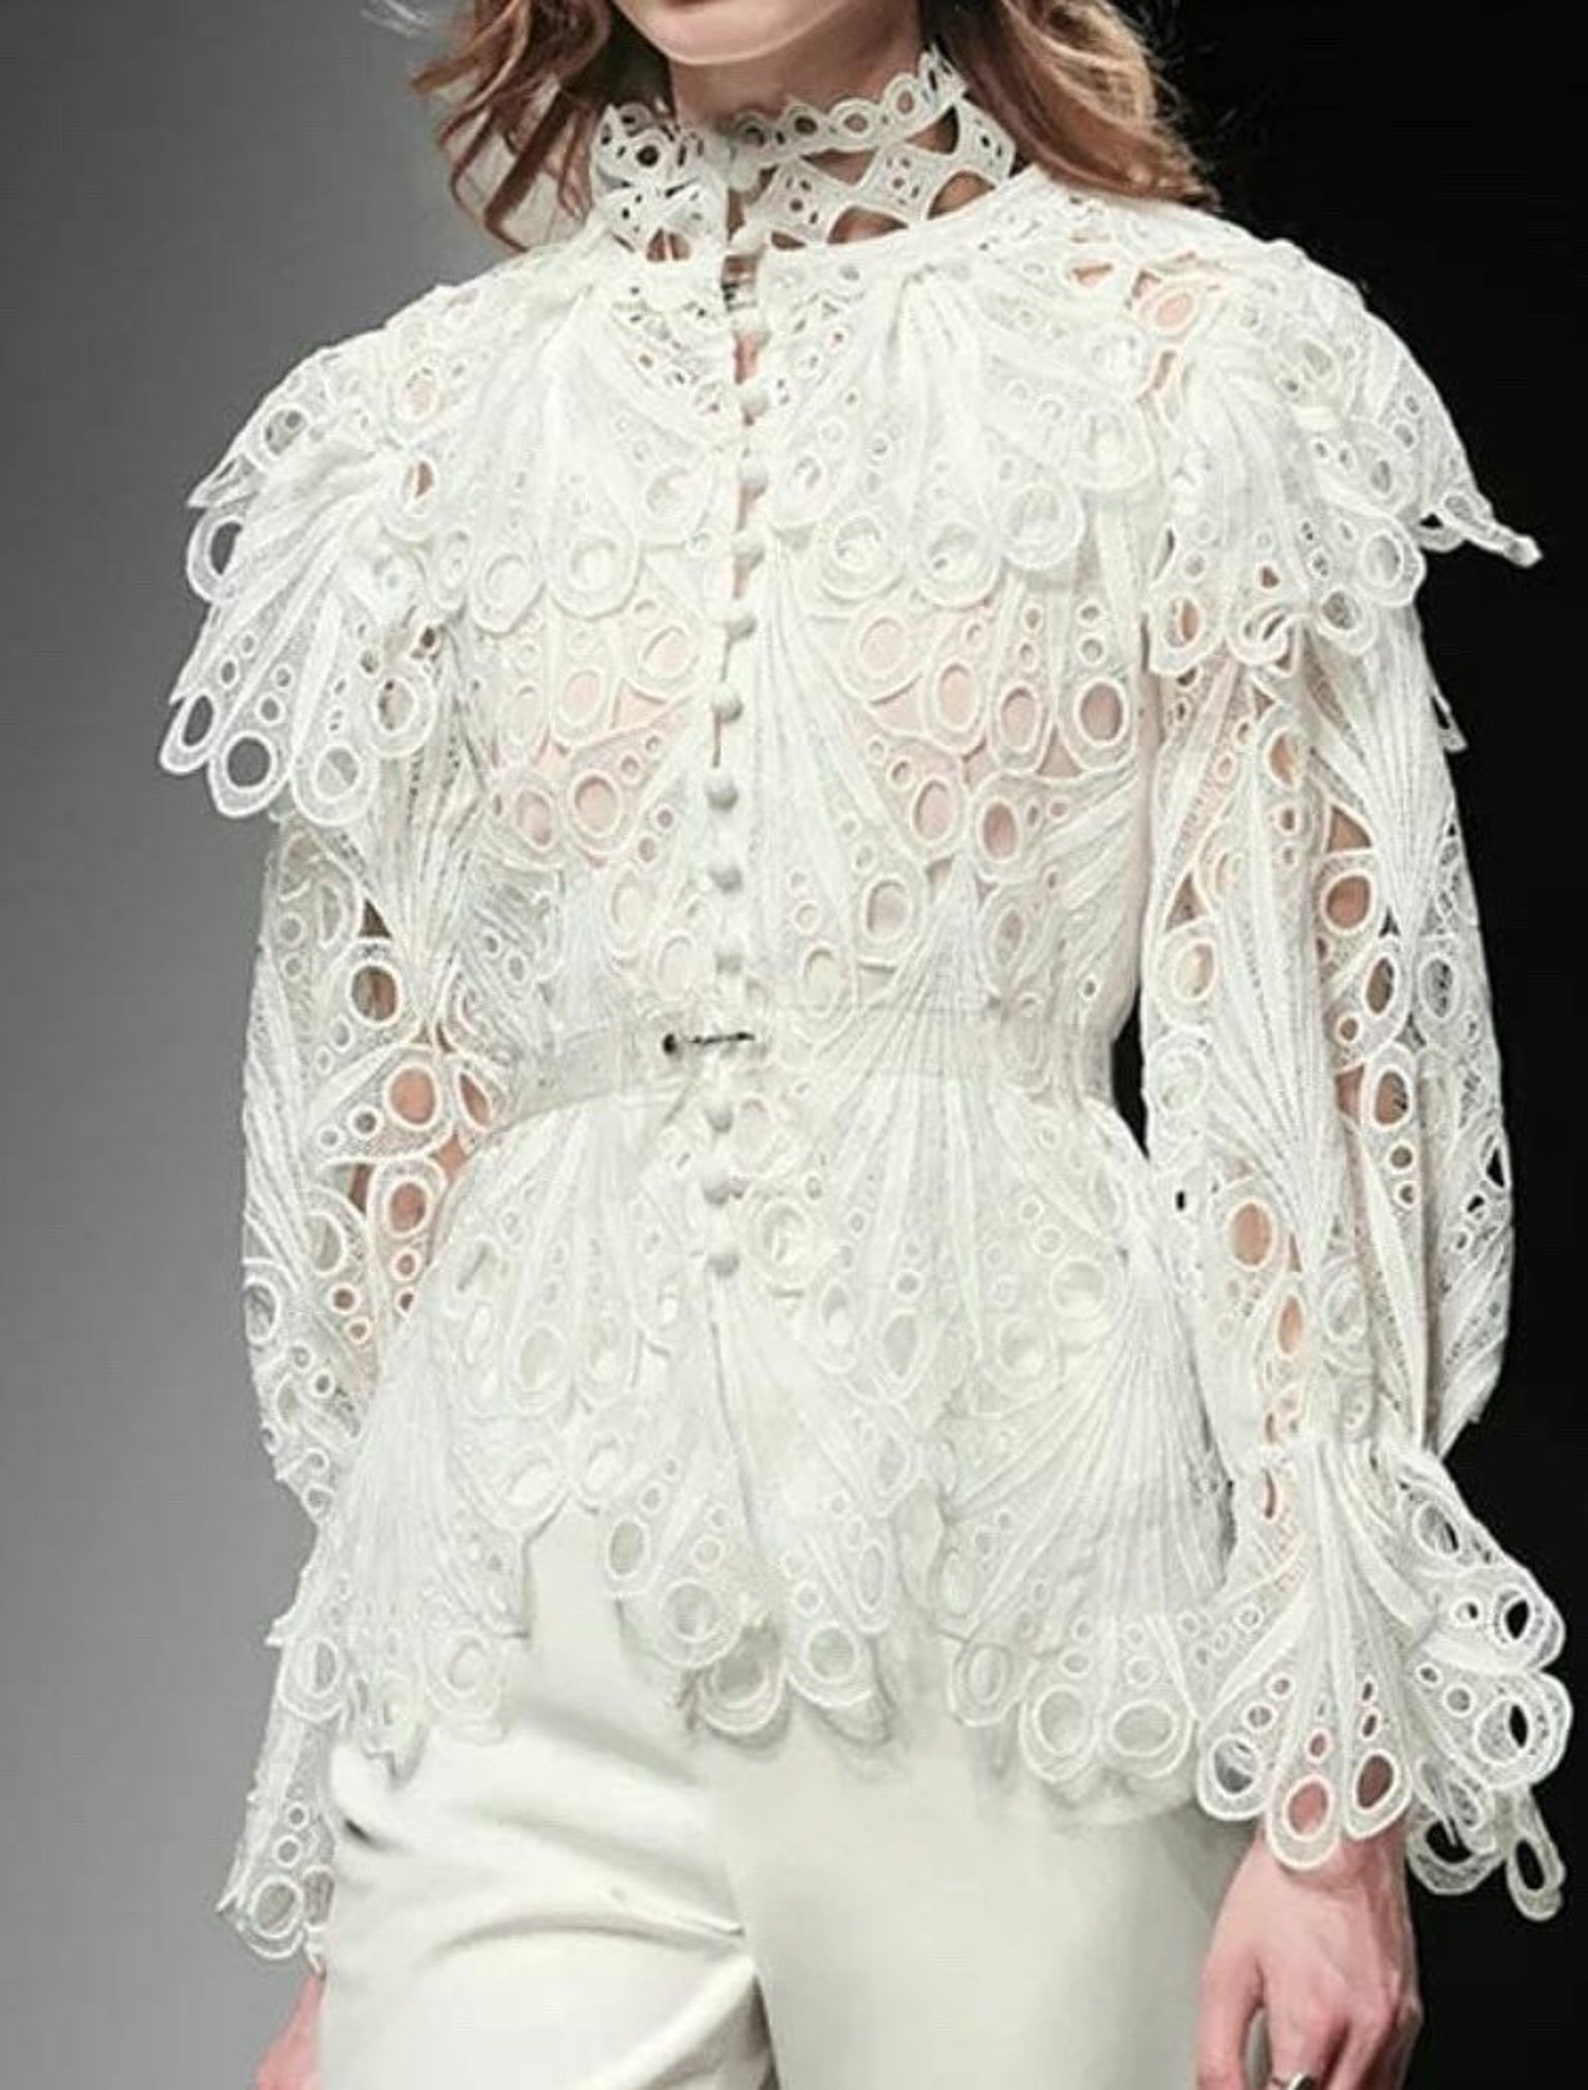 White lace Blouse cotton blouse lace blouse Cotton | Etsy